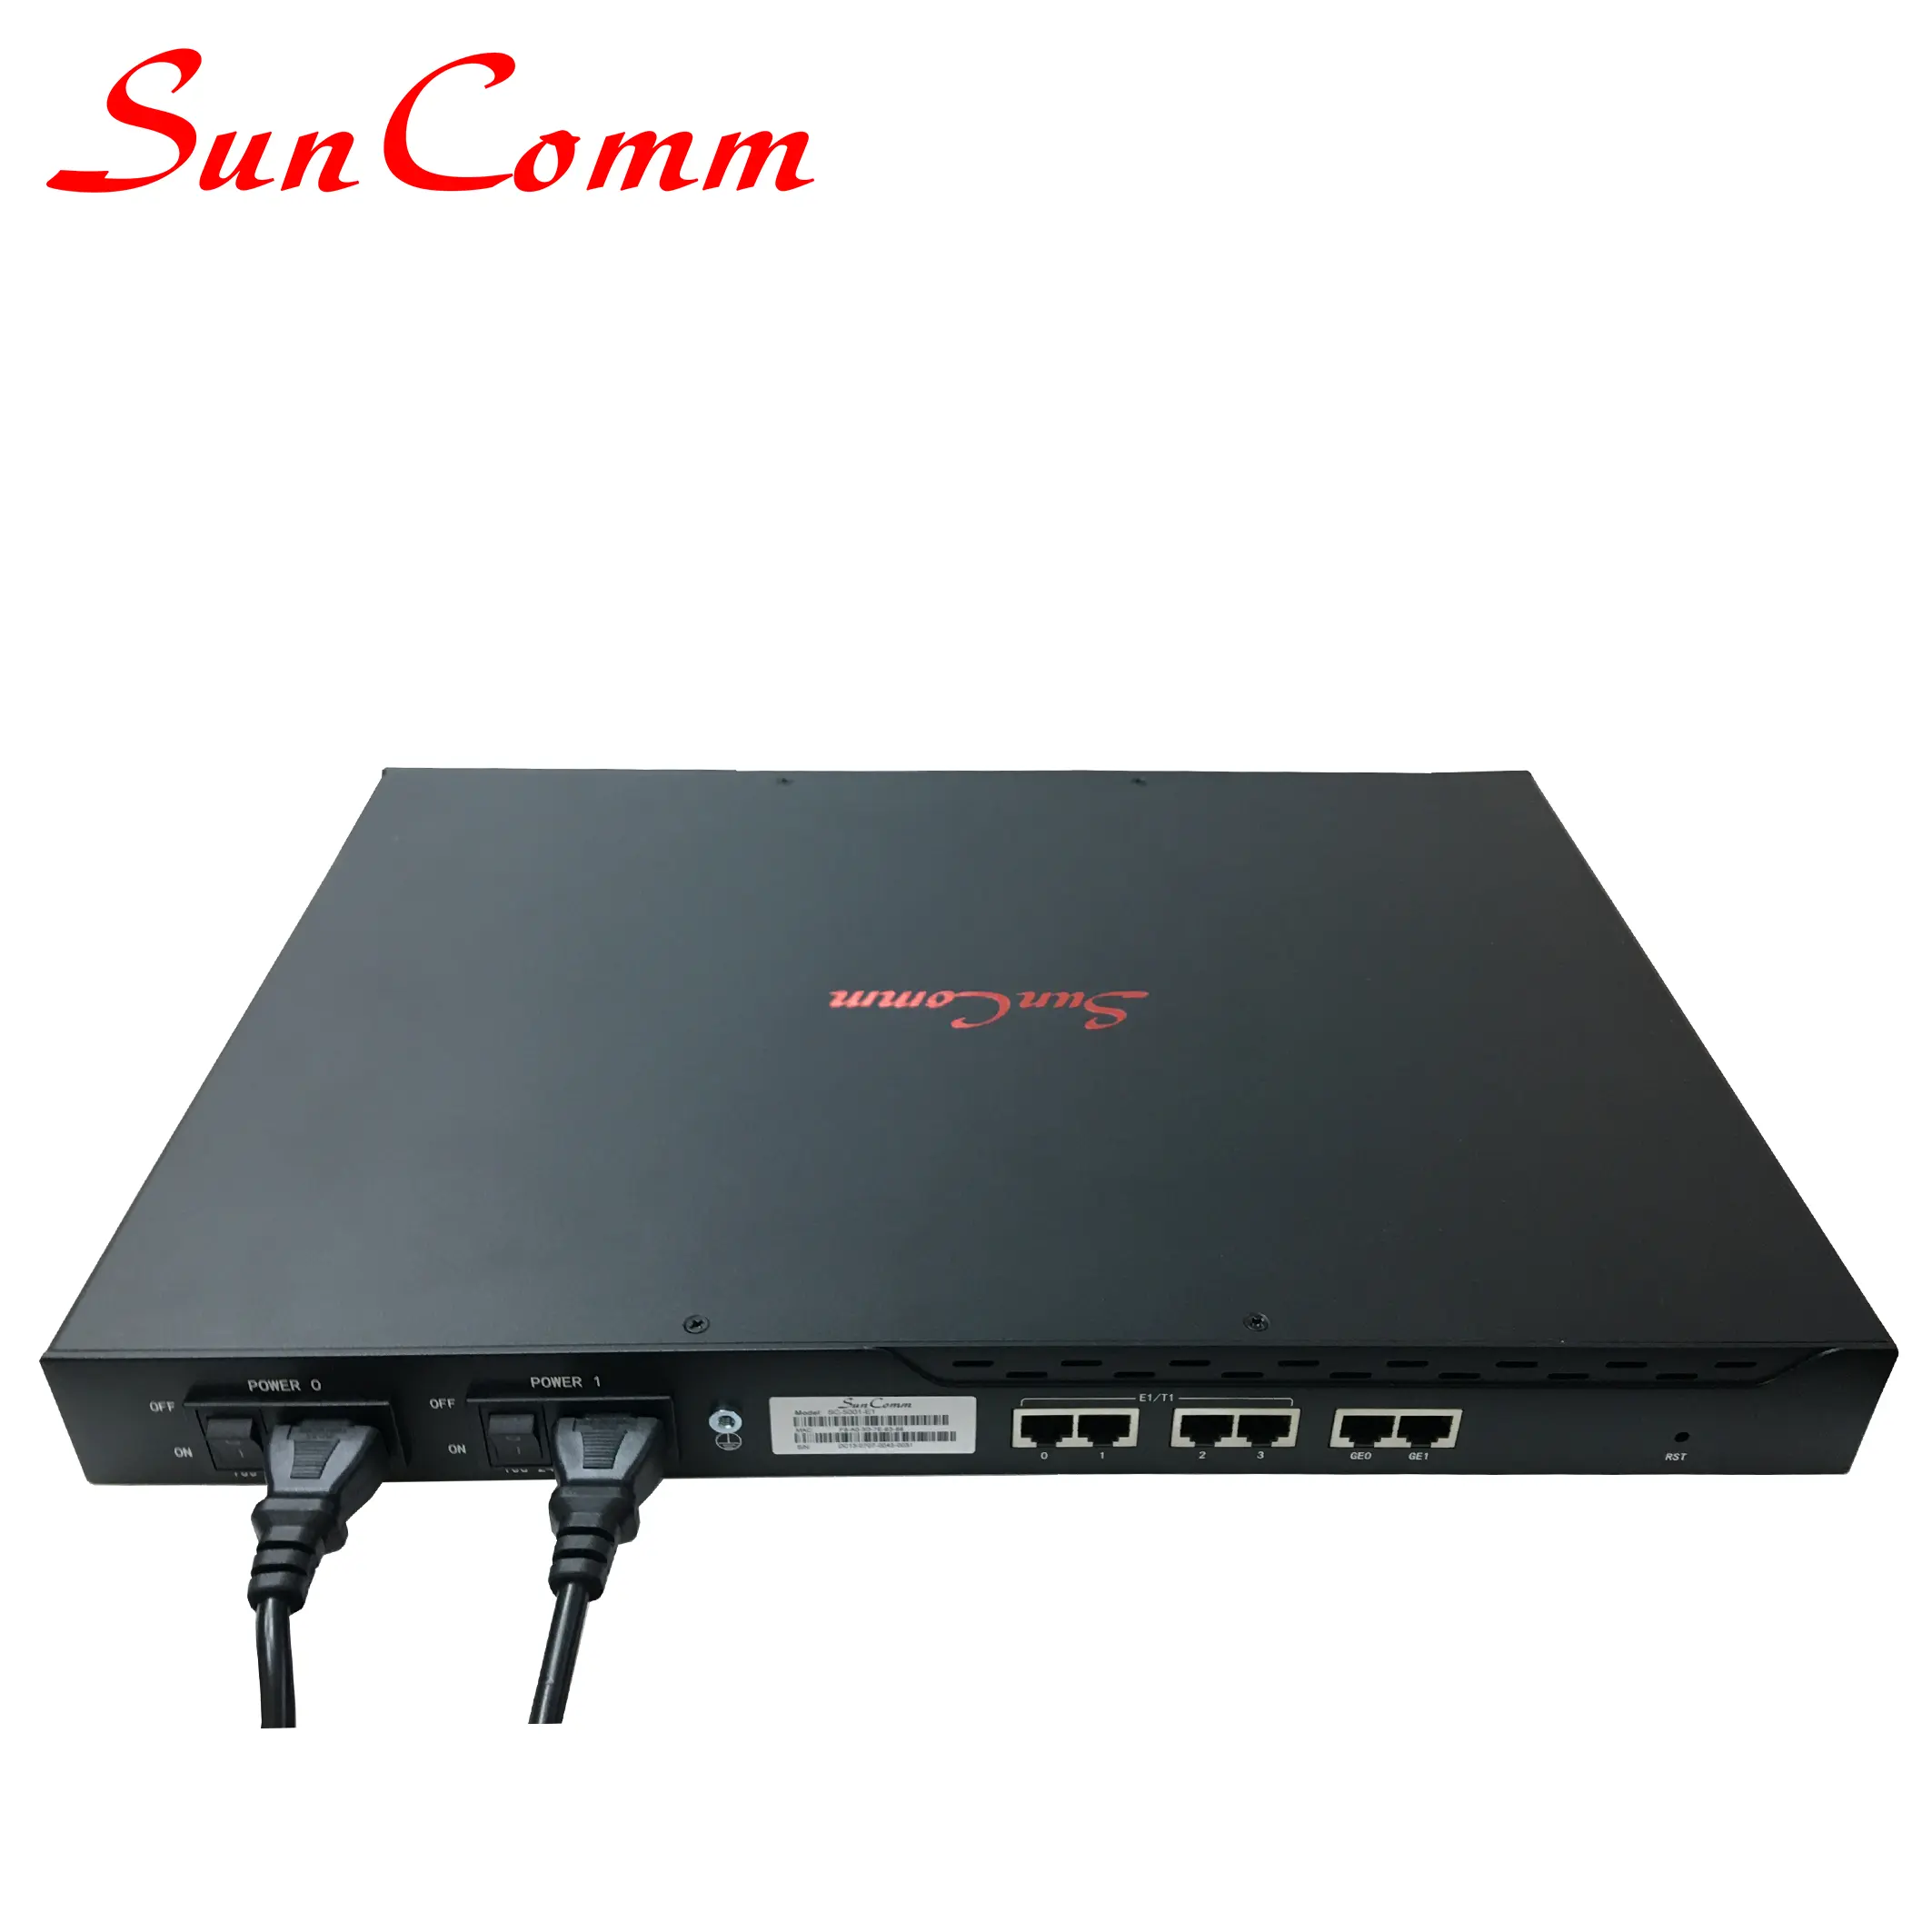 सनकॉम SC-5001-1E1 वोआईपी डिजिटल 1 पोर्ट ट्रंक गेटवे ई 1 या टी 1 पोर्ट के साथ